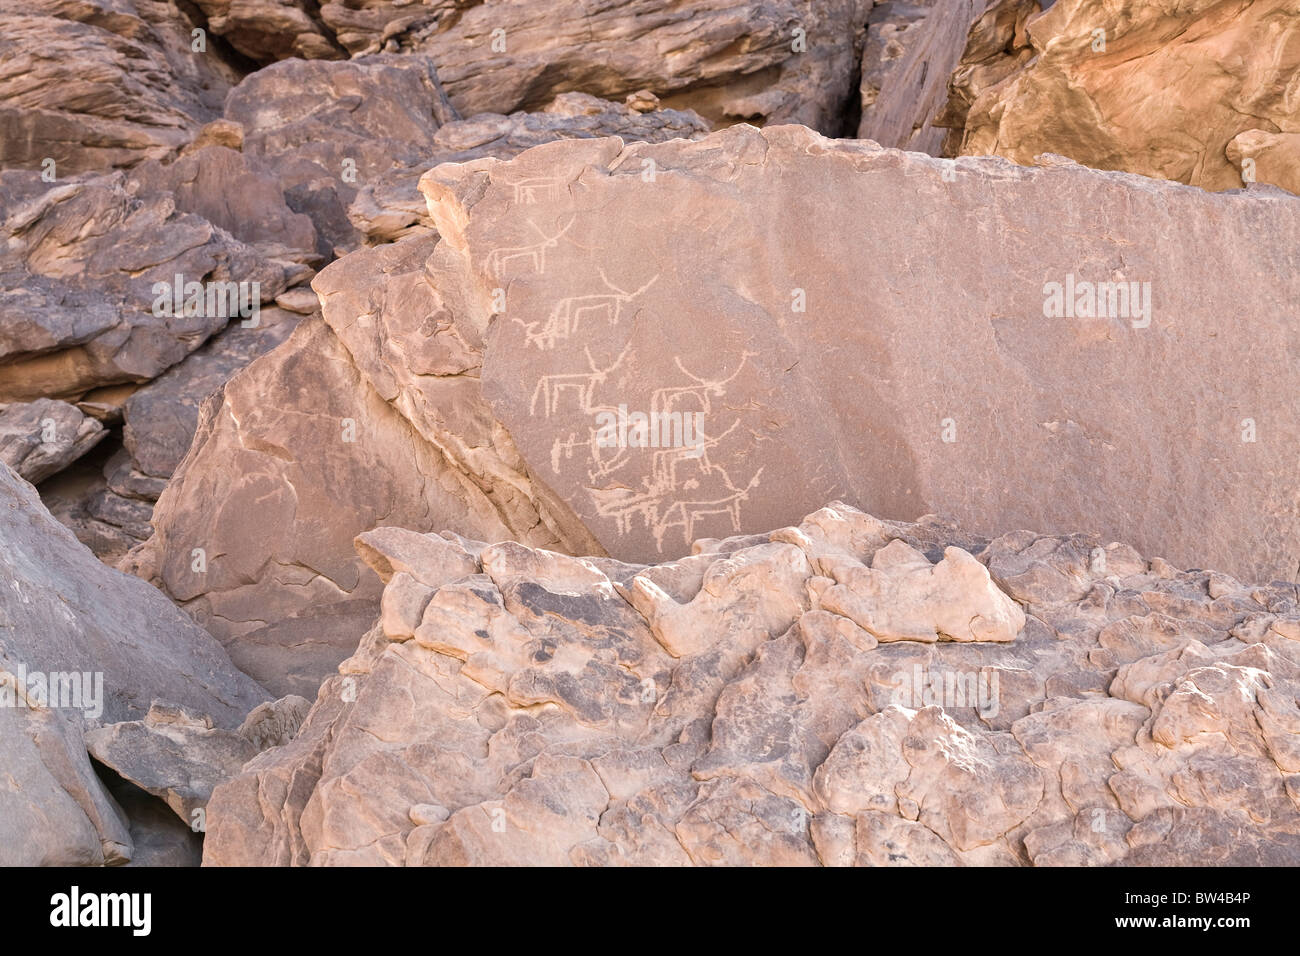 Petroglyphs of various horned animals in The Eastern Desert of Egypt Stock Photo